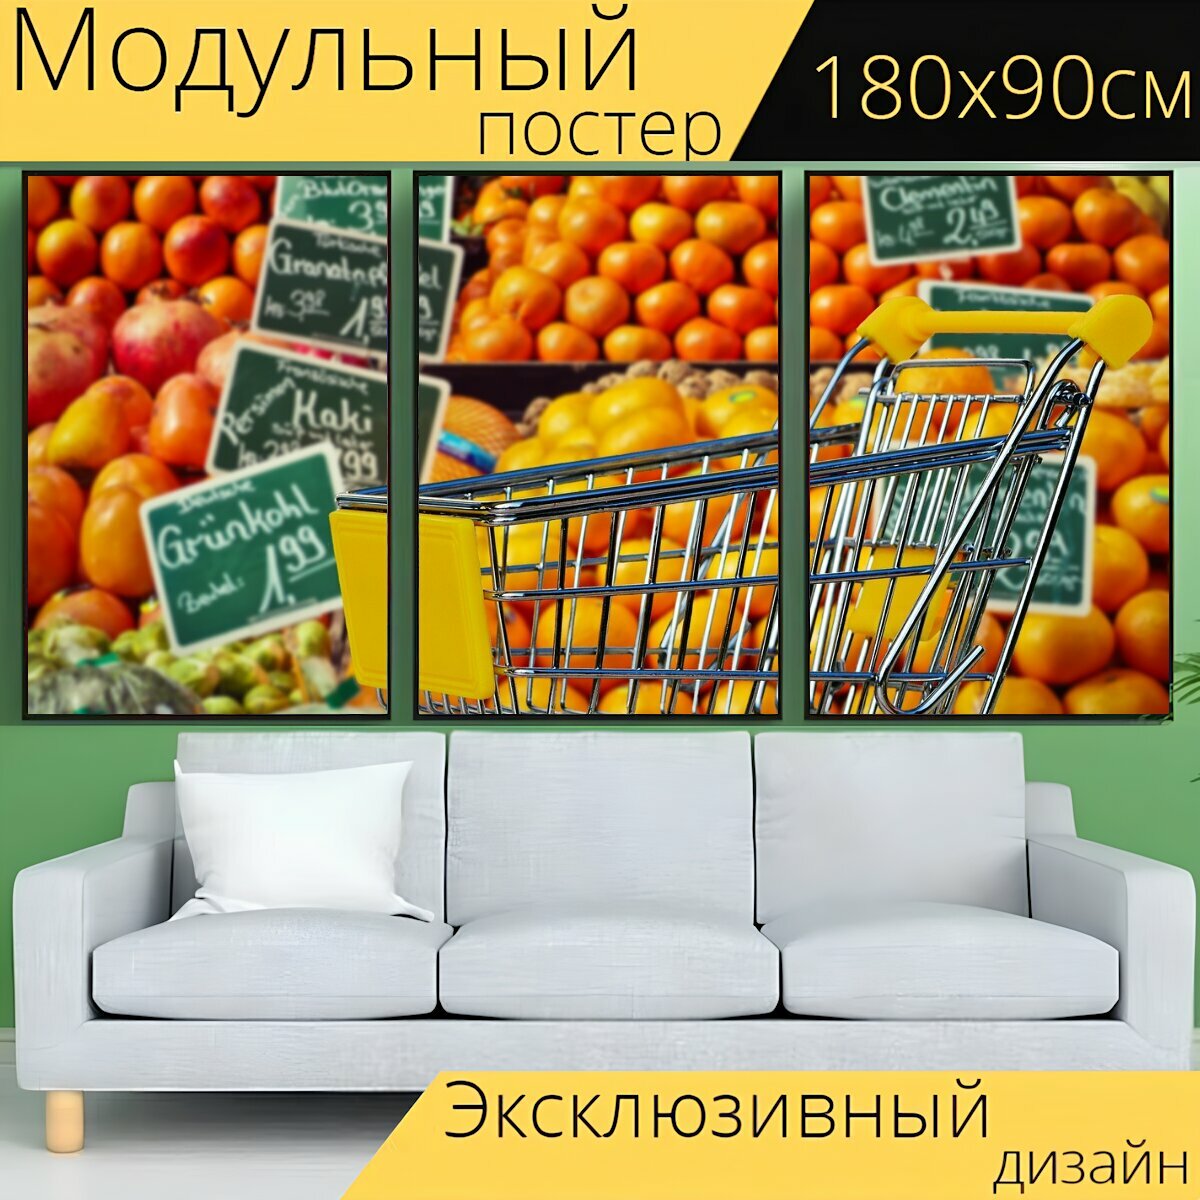 Модульный постер "Поход по магазинам, фрукты, овощи" 180 x 90 см. для интерьера